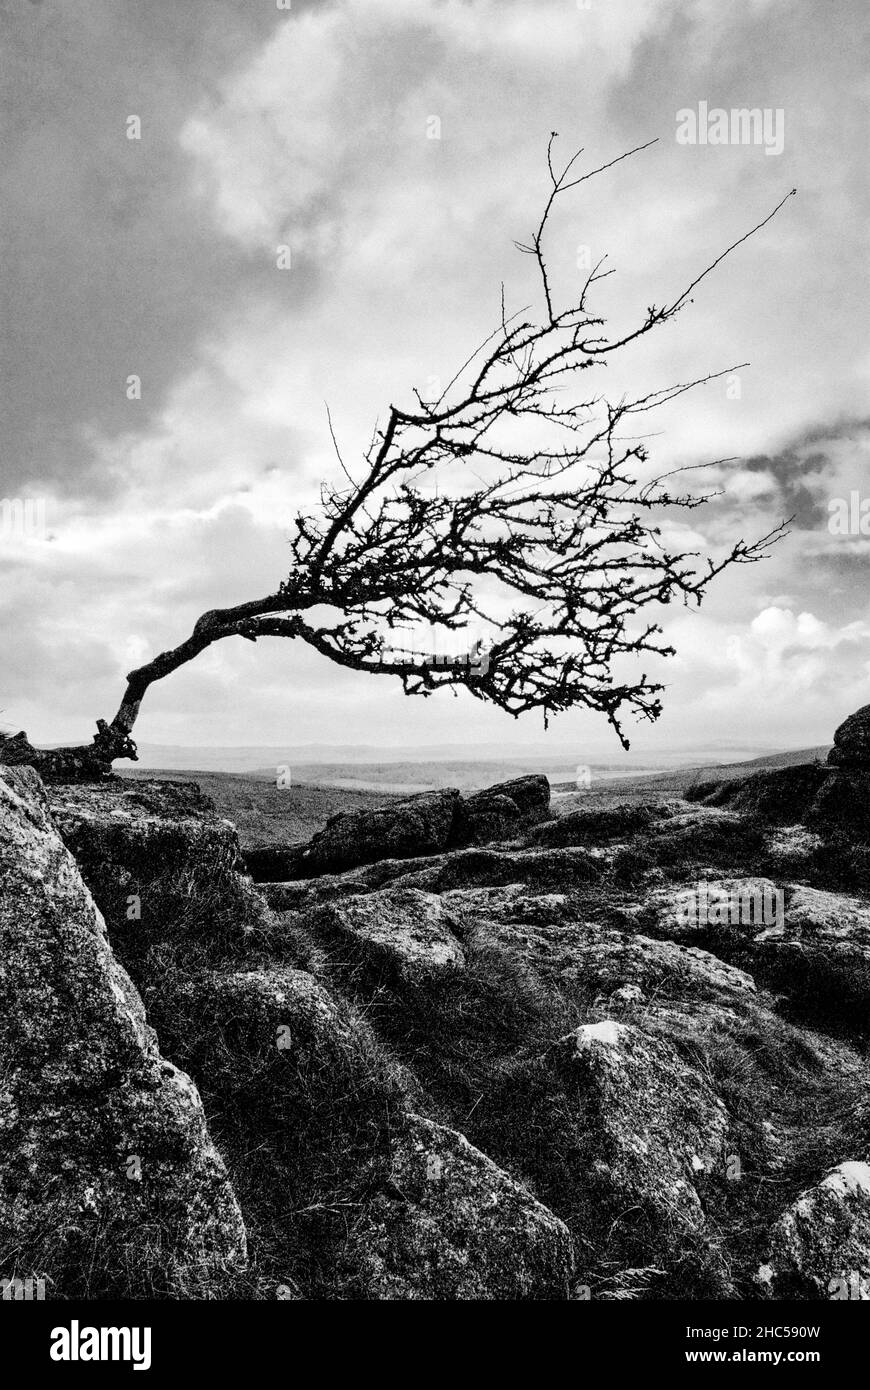 Regno Unito, Inghilterra, Devonshire, Dartmoor. Sharp Tor, un robusto albero Hawthorne piegato dal vento. Foto Stock